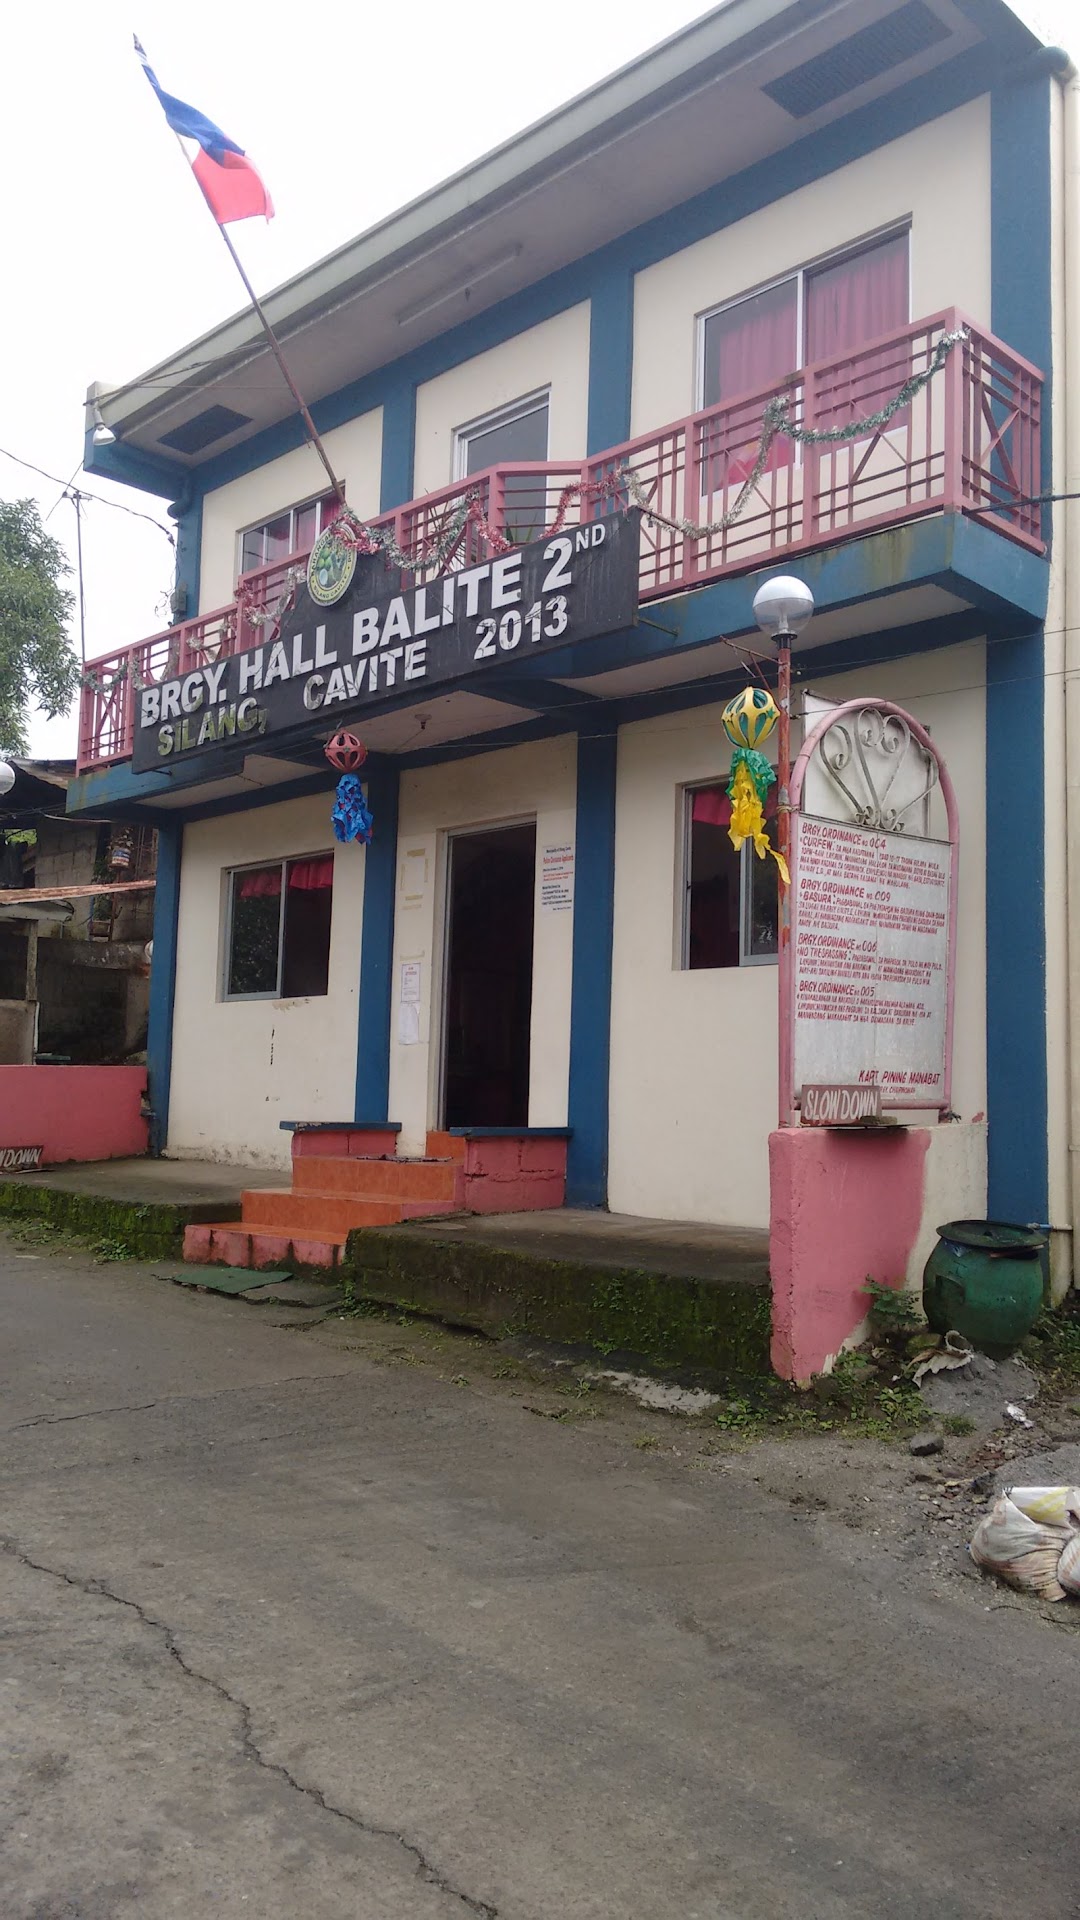 Brgy. Hall Balite 2nd Silang, Cavite 2013